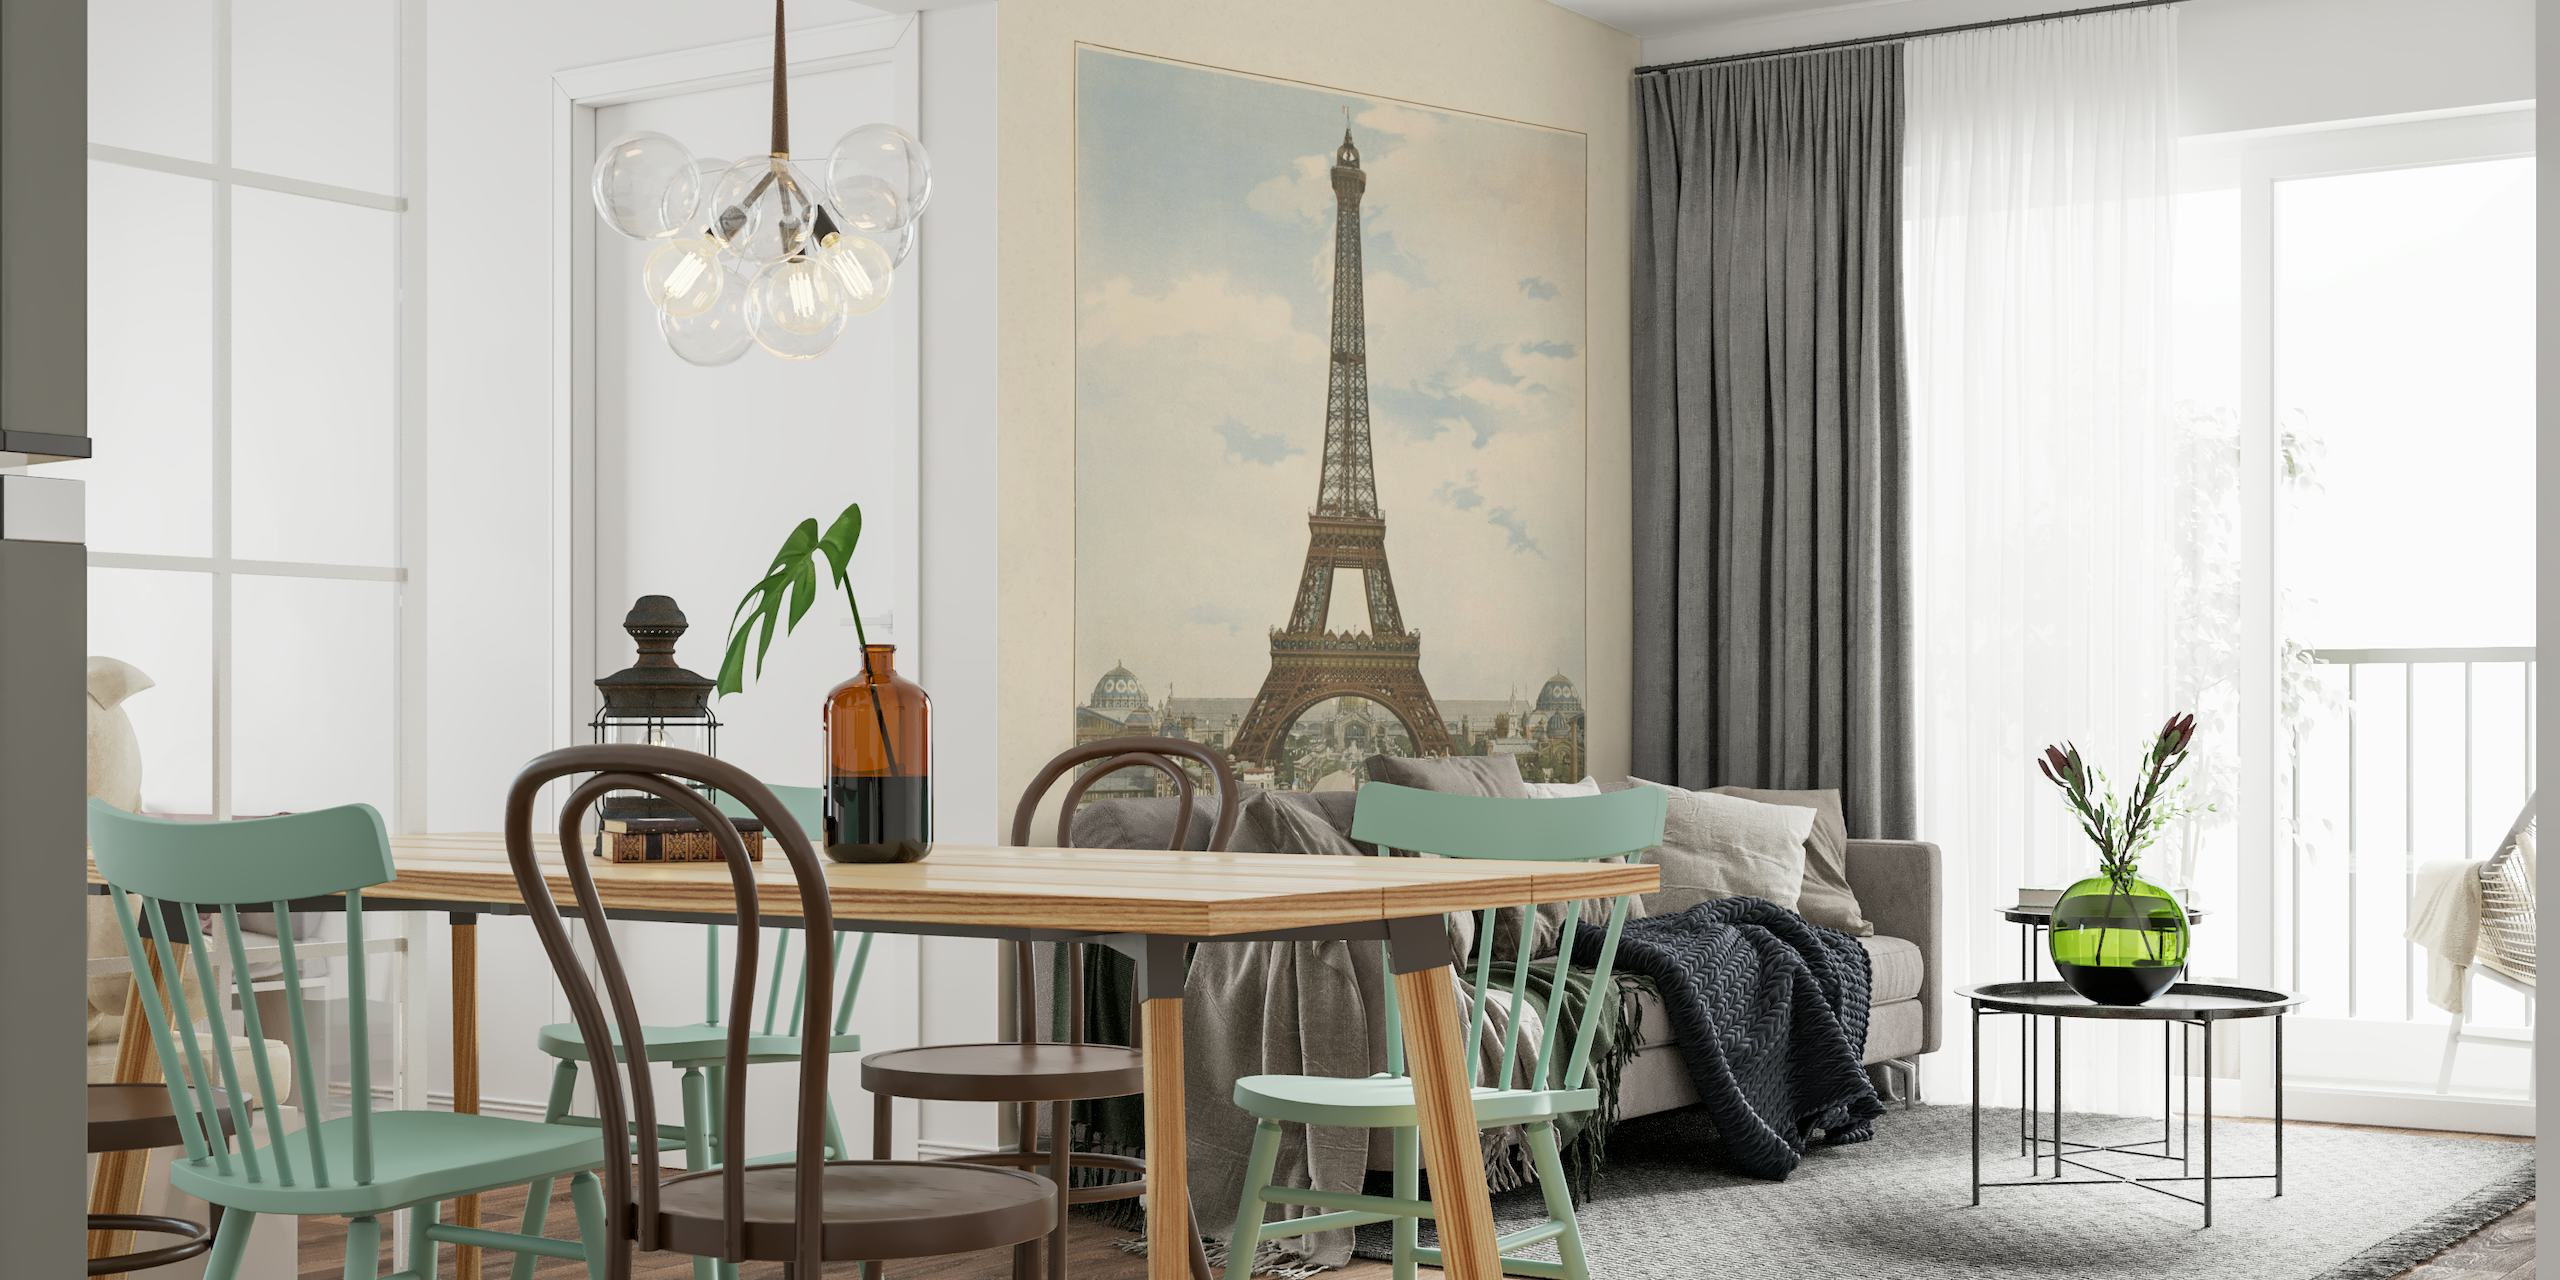 Fototapete im Vintage-Stil des Eiffelturms in Paris mit umgebender Architektur unter einem ruhigen Himmel.